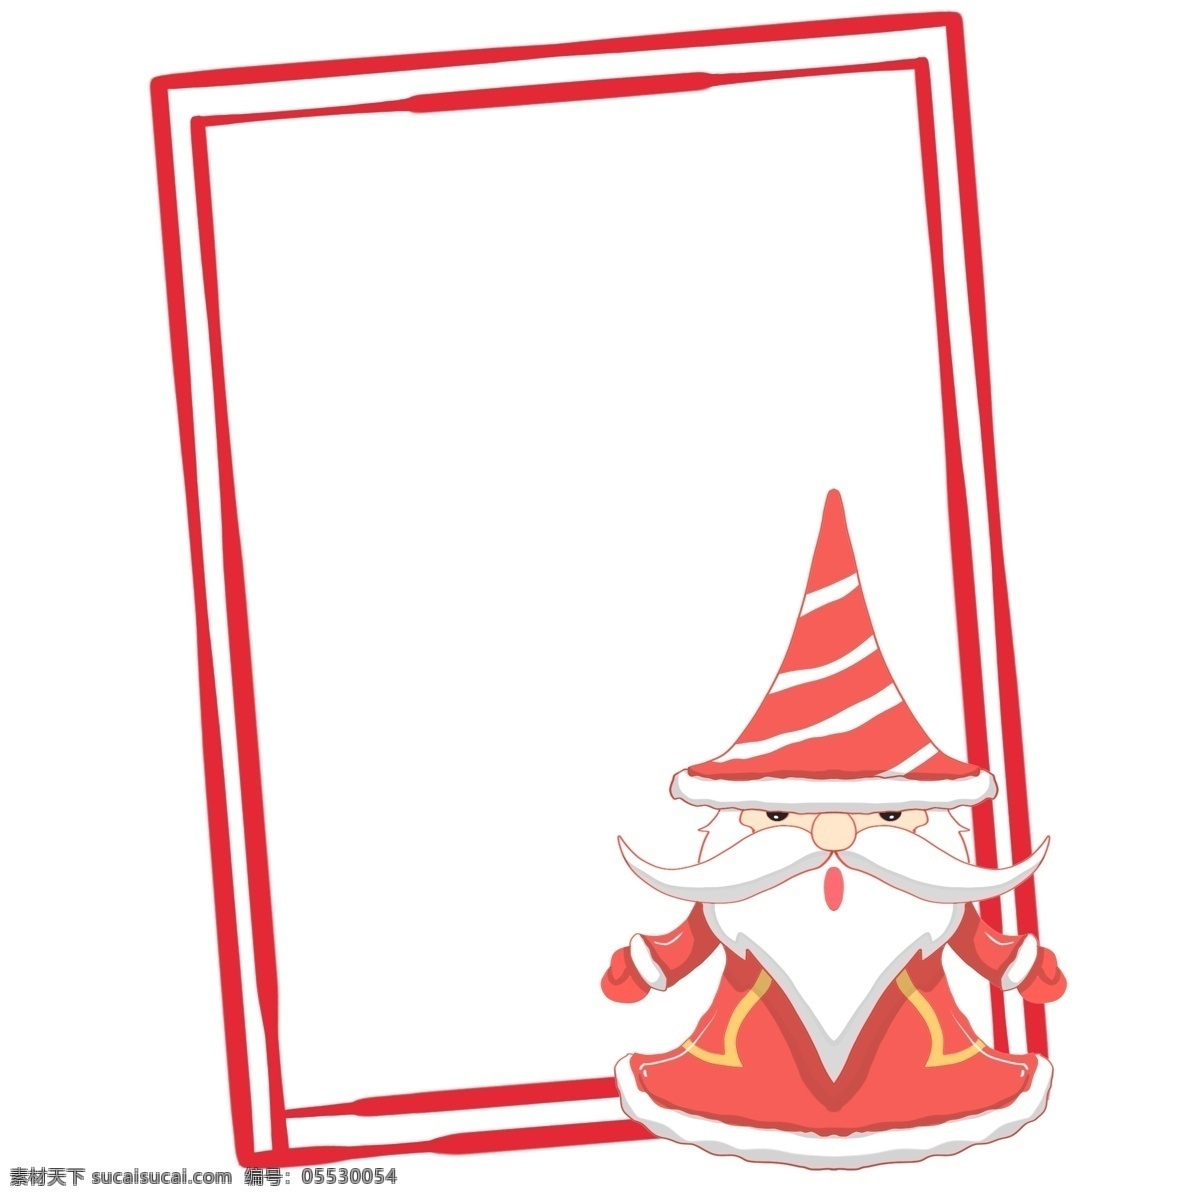 手绘 圣诞老人 边框 红色边框 圣诞边框 手绘圣诞老人 手绘边框 圣诞老人插画 圣诞老人边框